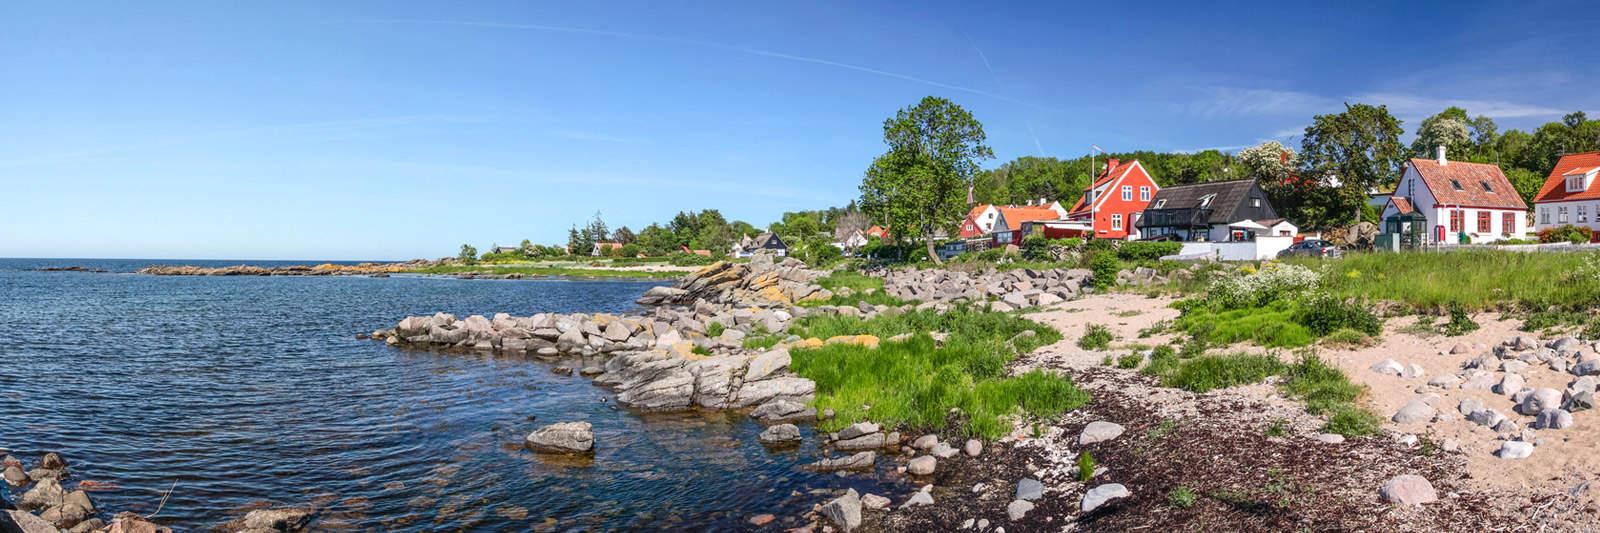 19 Ferienwohnungen und Ferienhäuser in Klintholm Havn - tourist-online.de